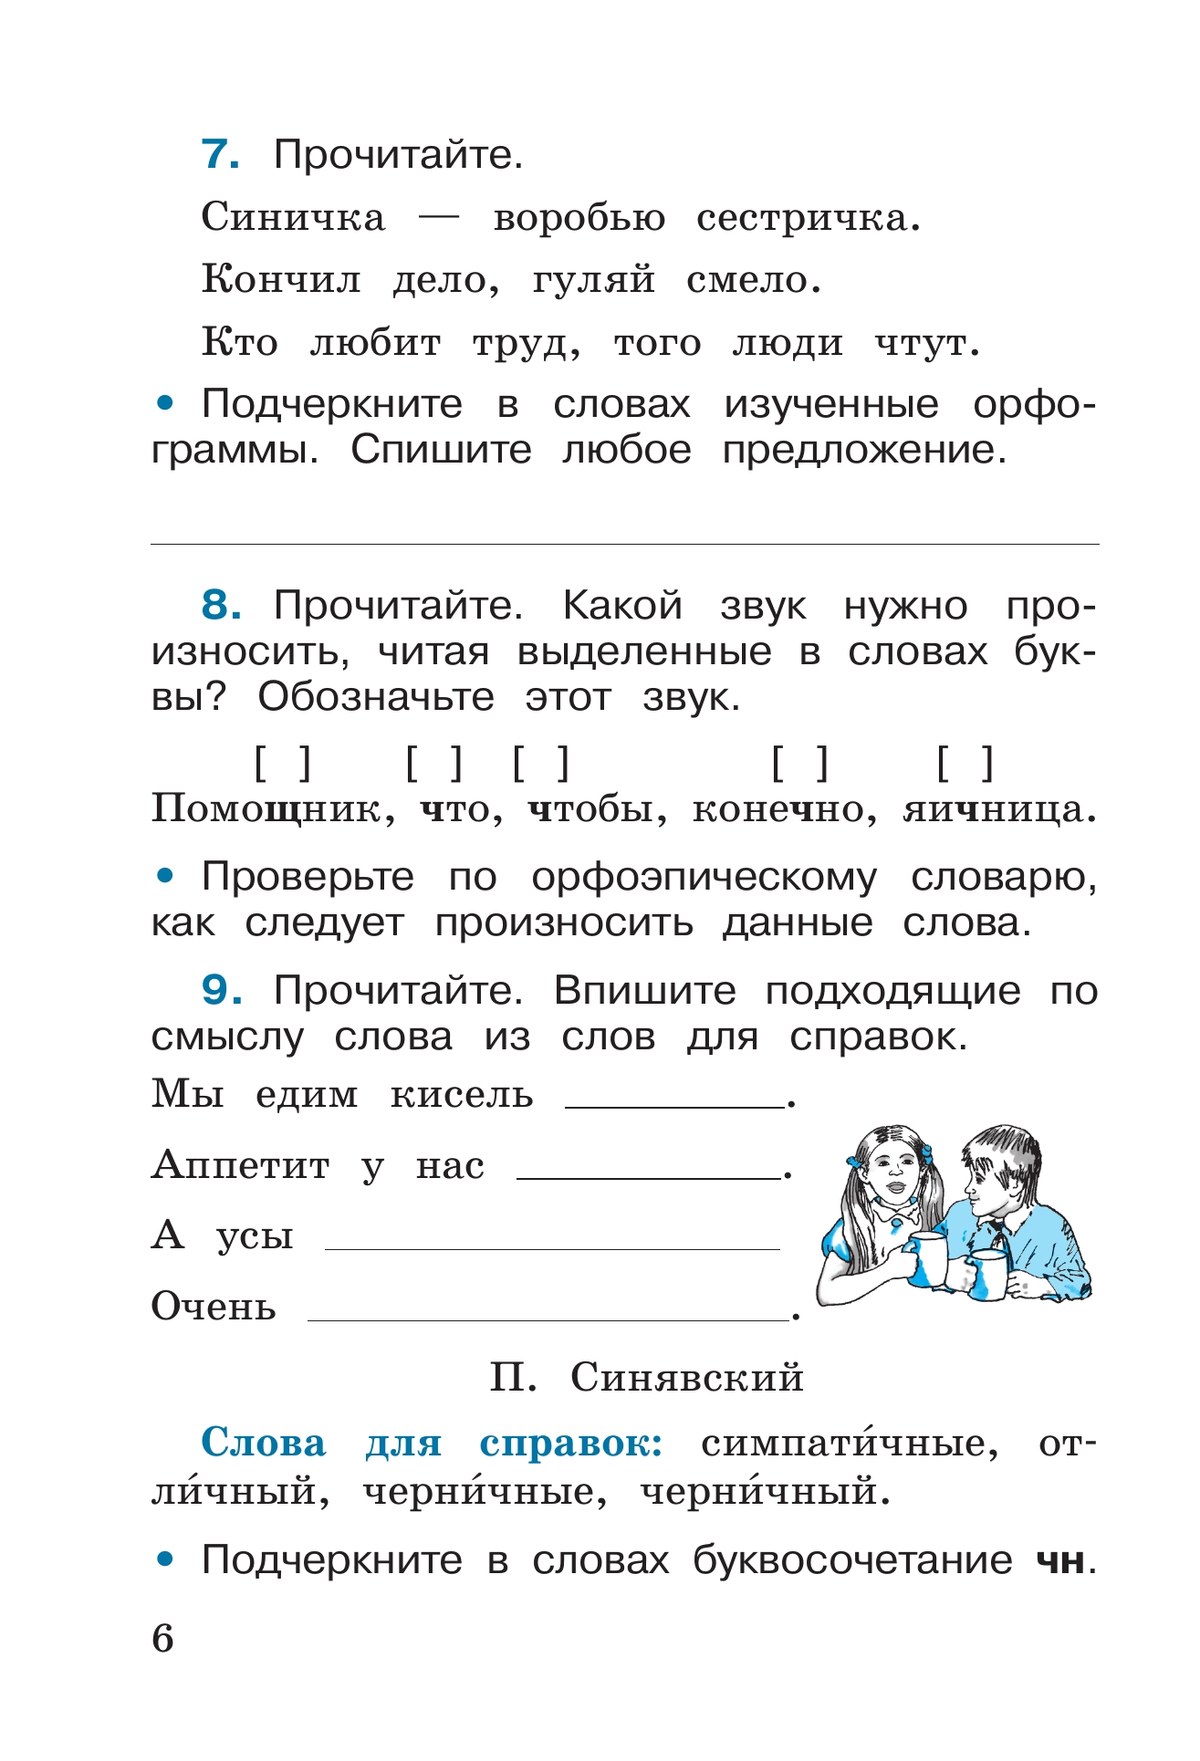 Русский язык. Рабочая тетрадь. 2 класс. В 2-х ч. Ч. 2 2